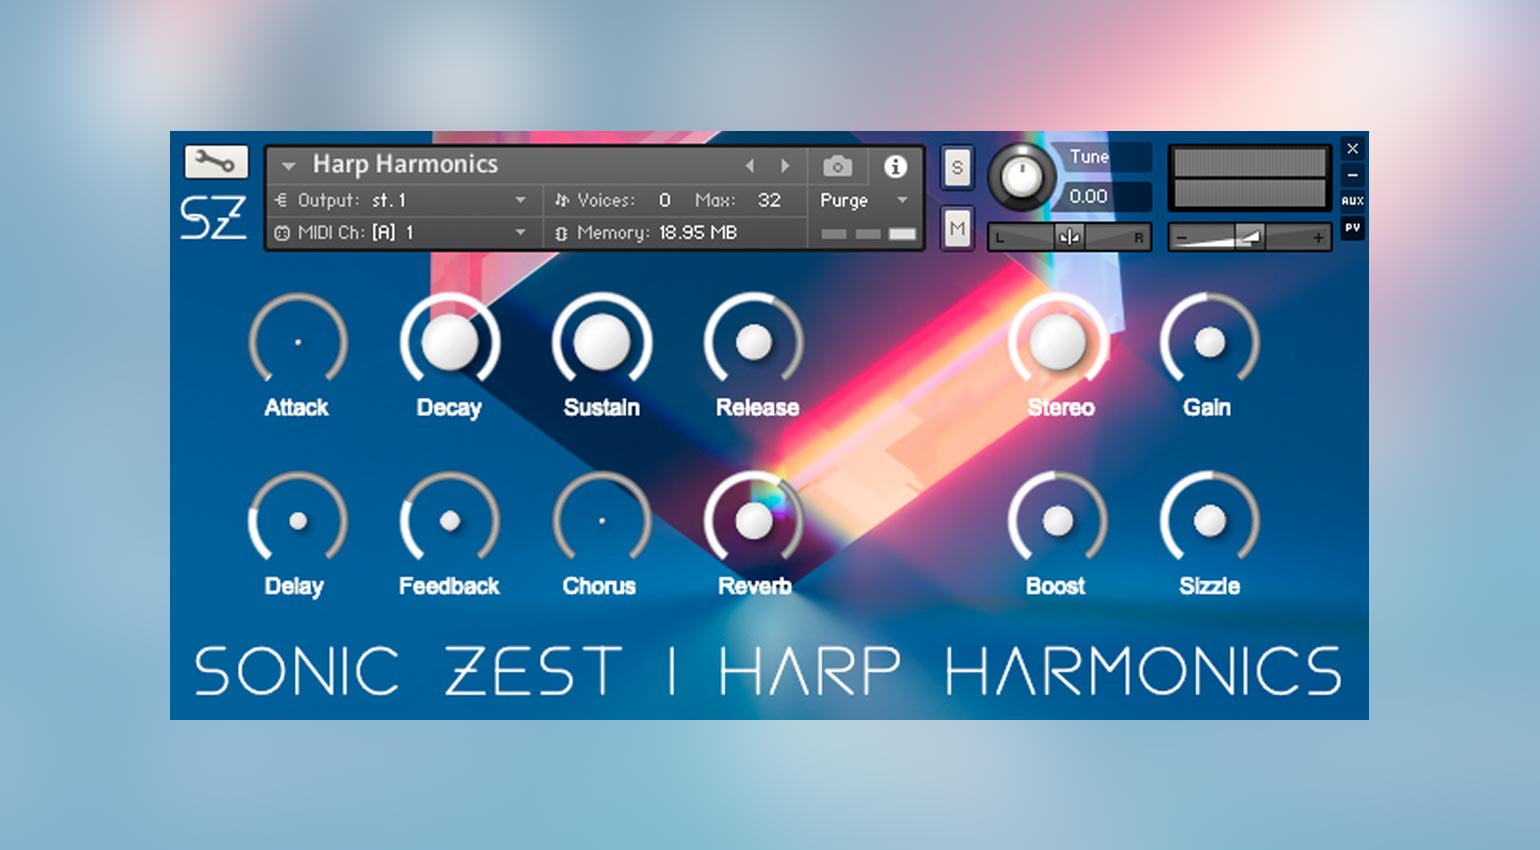 Sonic Zest Harp Harmonics